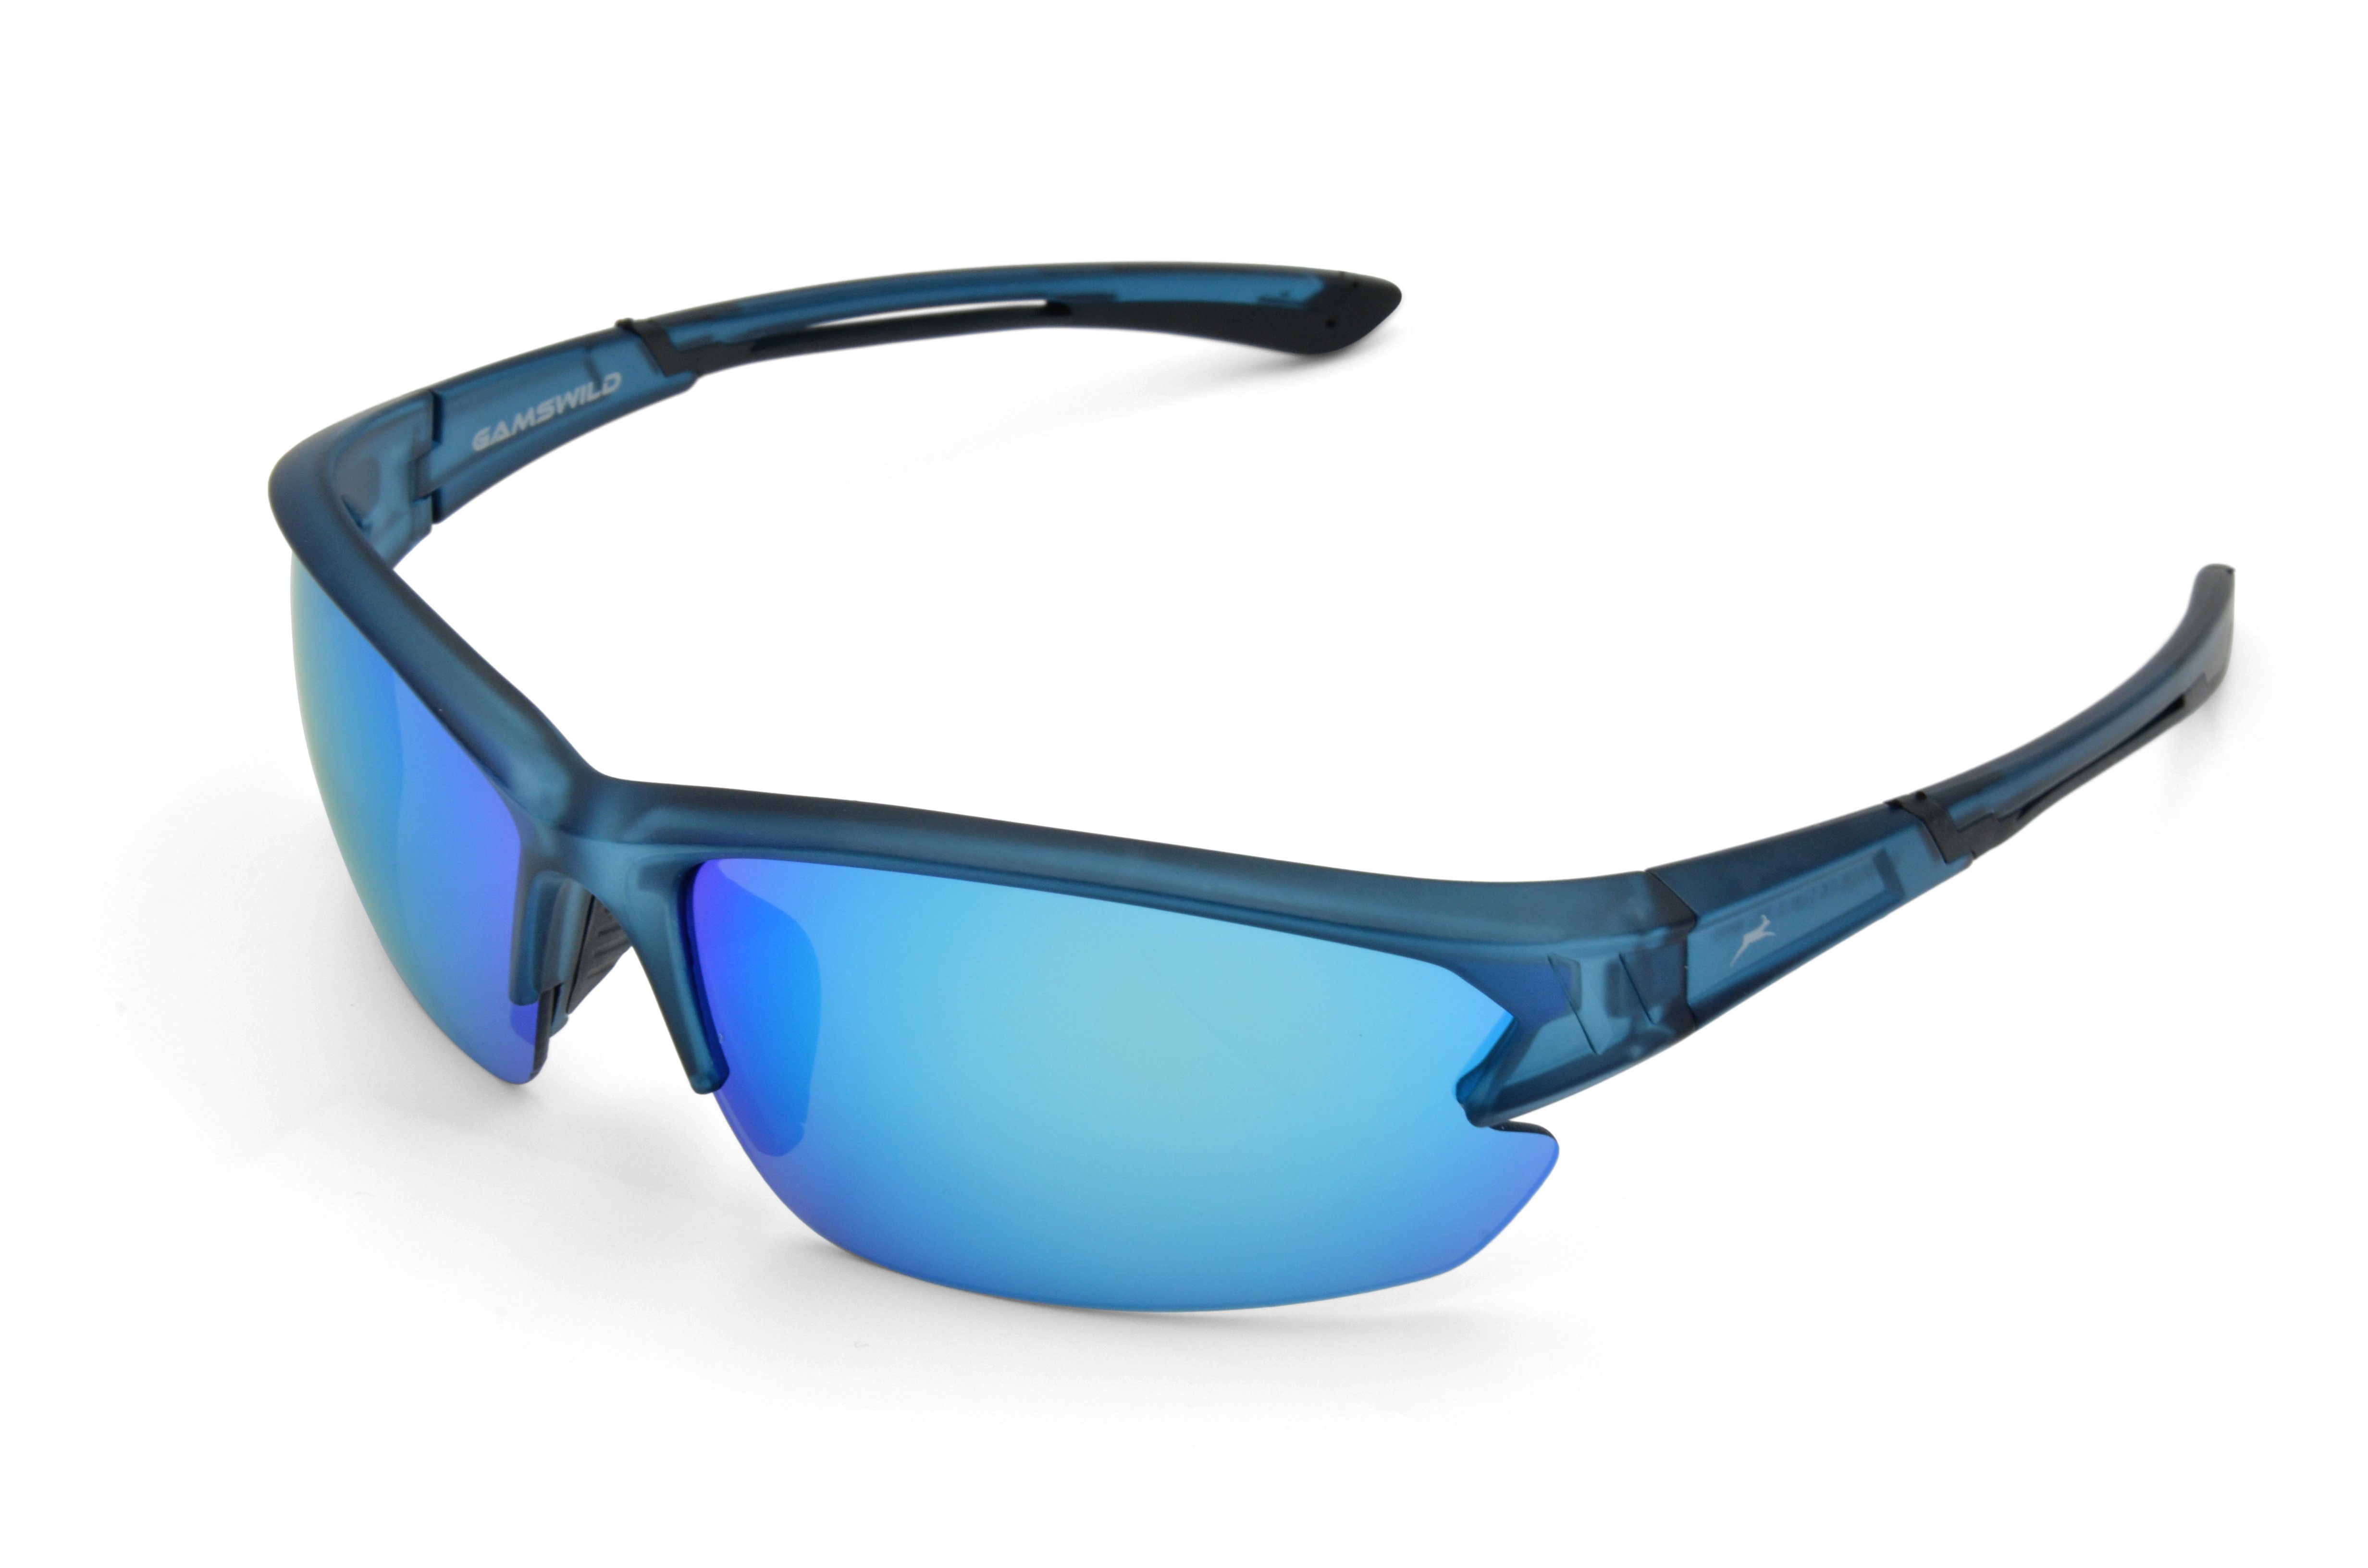 Herren Sonnenbrille Halbrahmenbrille Fahrradbrille WS6028 blau, Unisex, Gamswild Sportbrille rot-orange, Skibrille Damen violett,